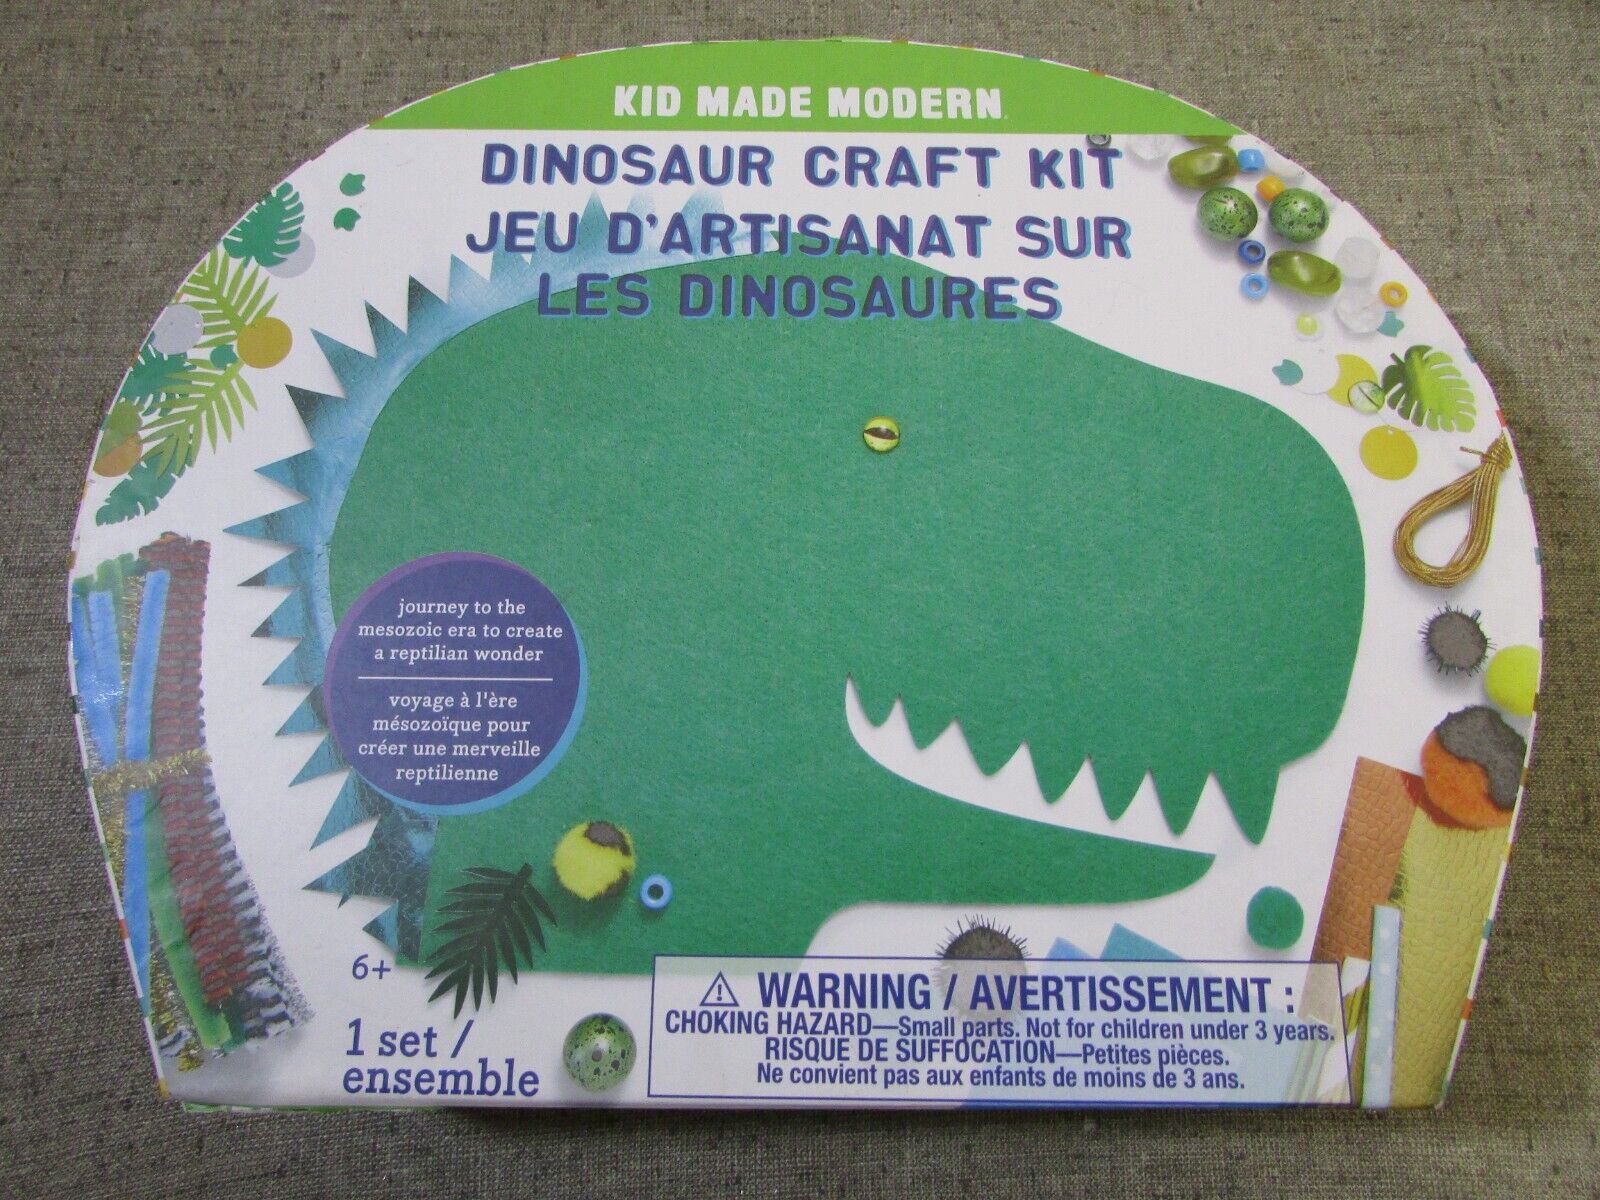 Deluxe Dinosaur Craft Kit for Kids